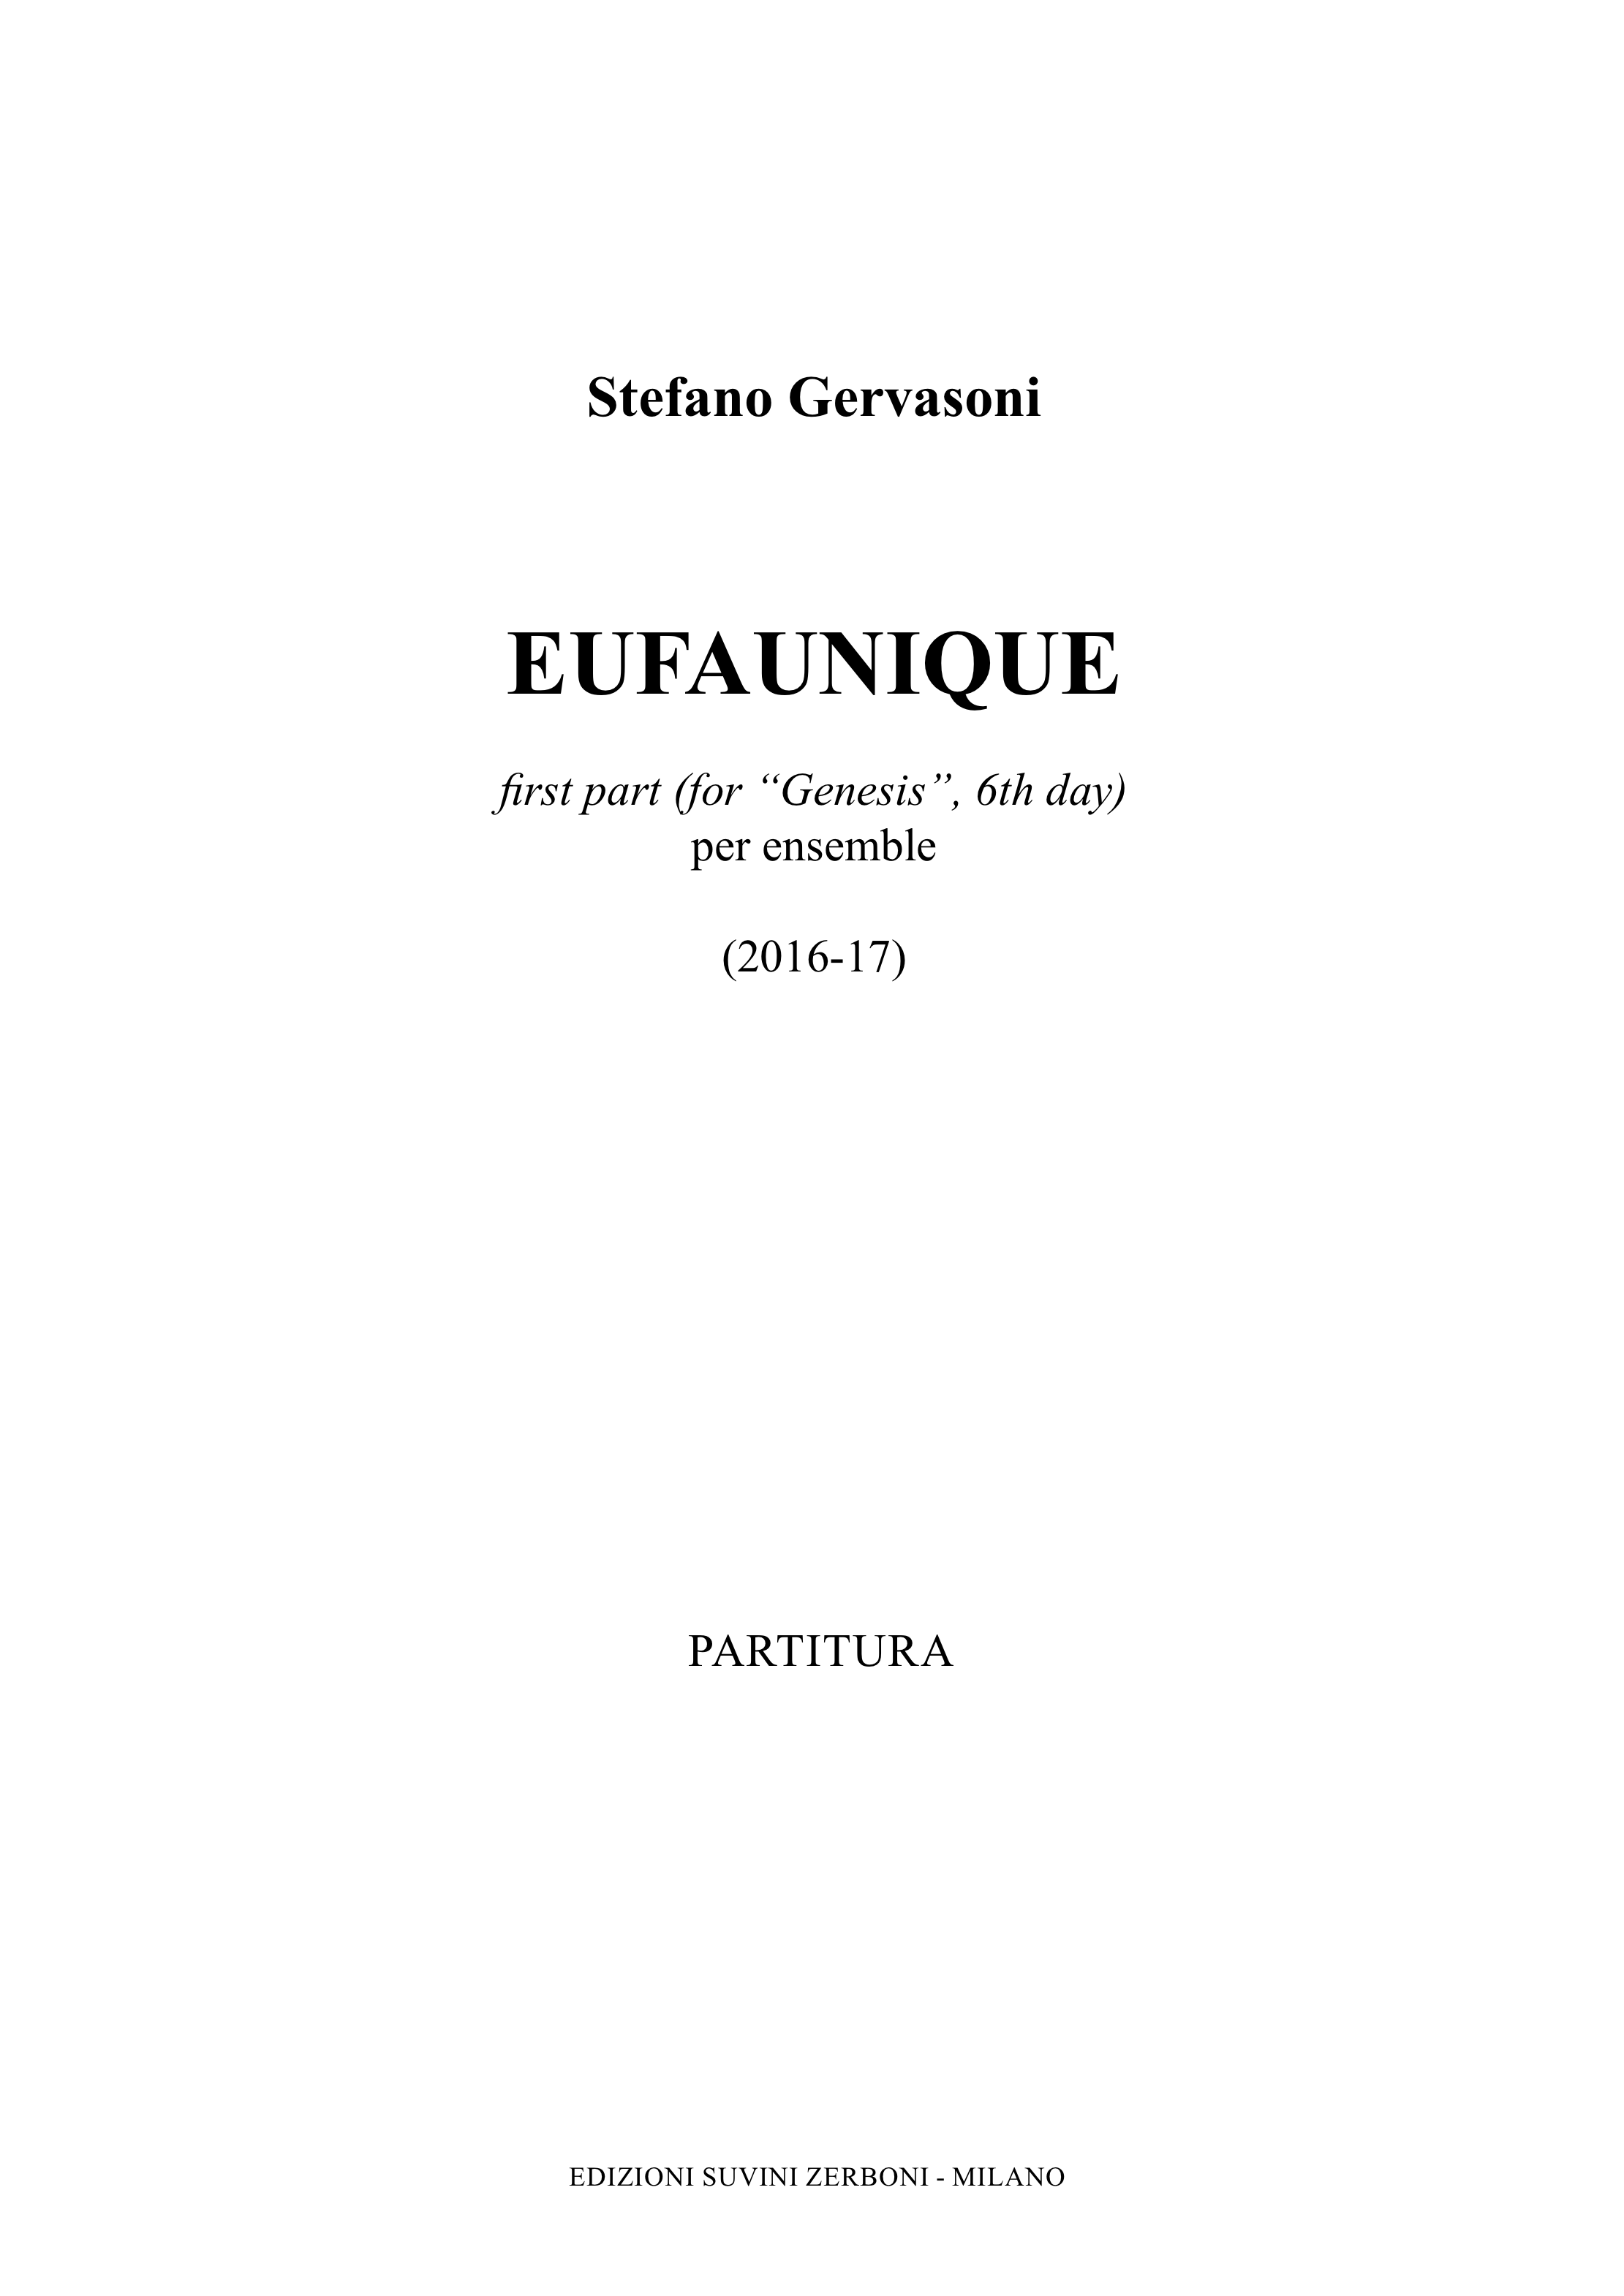 Eufaunique for Genesis_Gervasoni 1